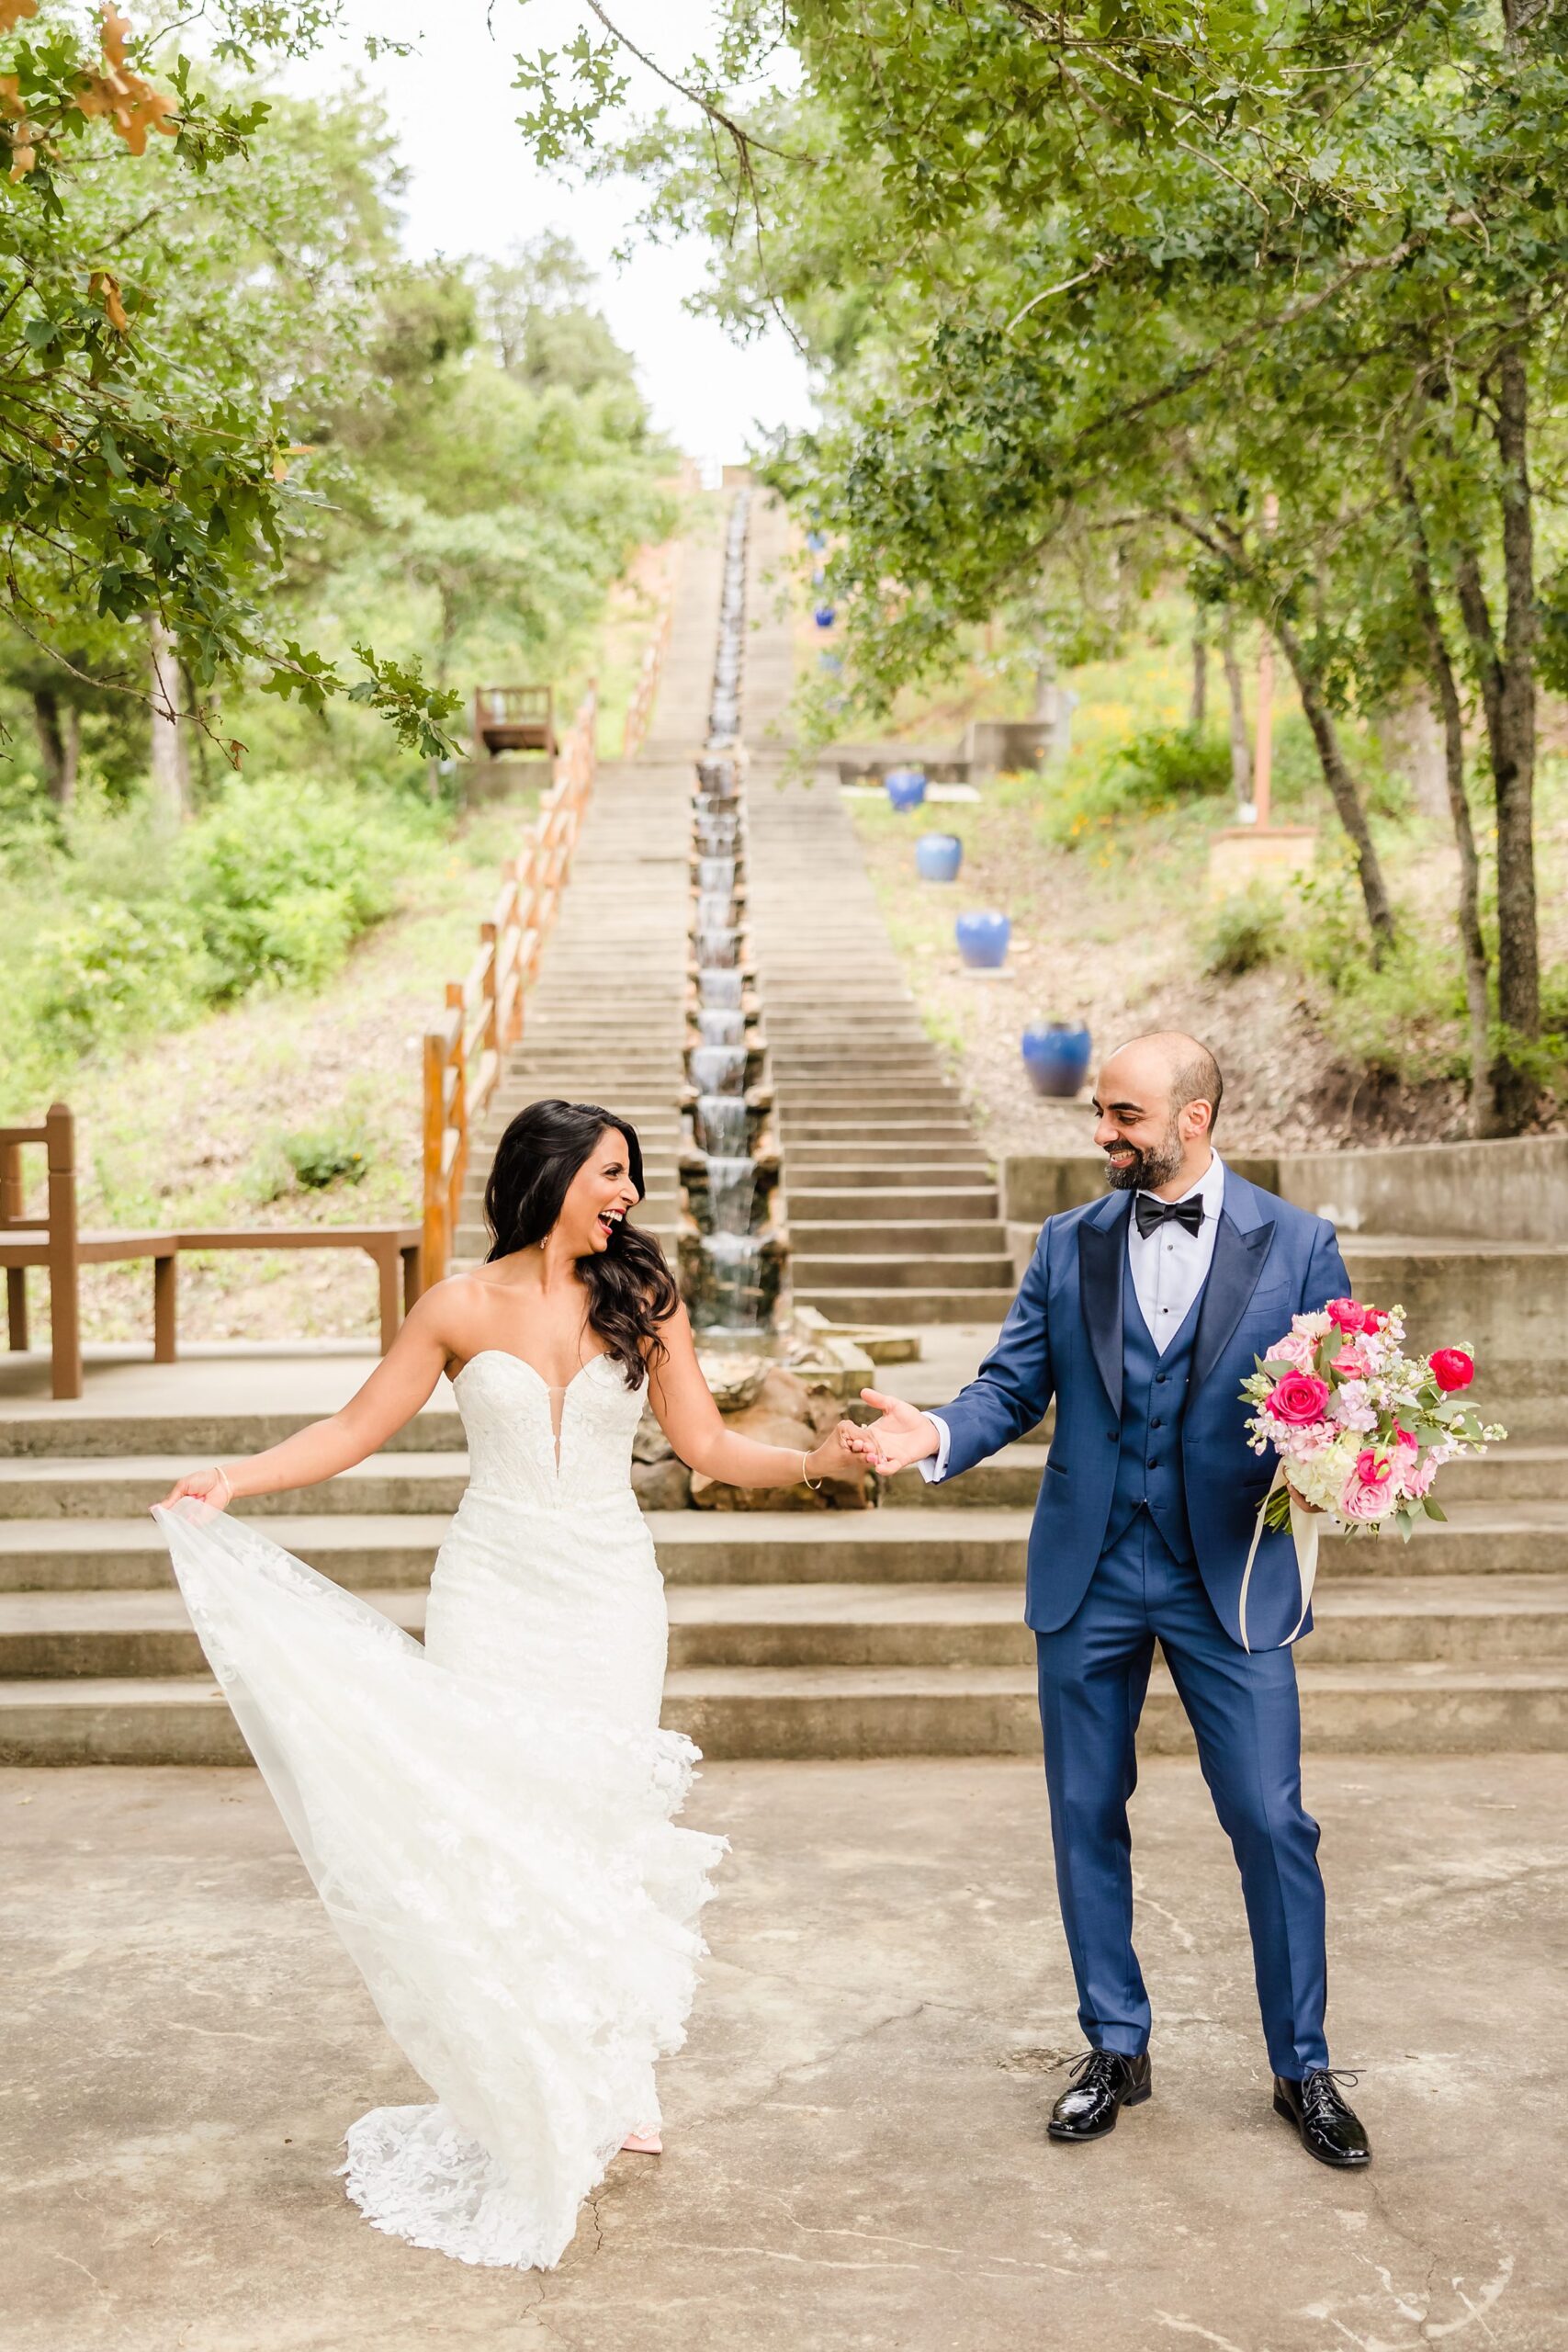 Bride and groom celebrate during a wedding at the Shiraz Garden in Bastrop, Texas.